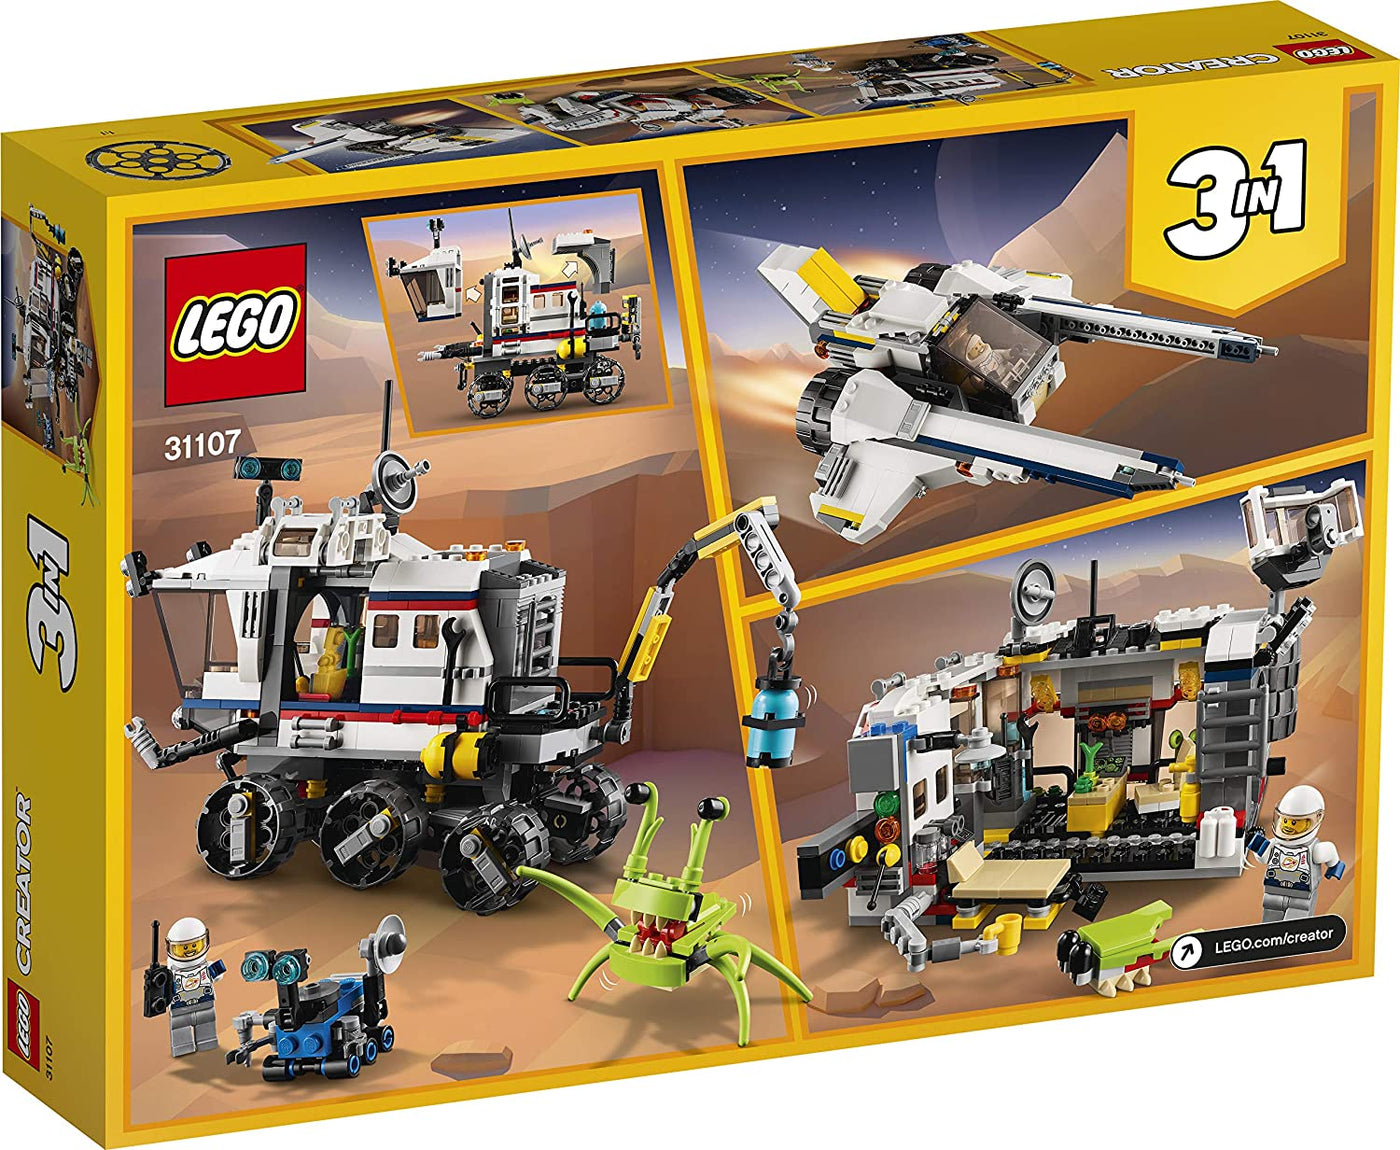 Space Rover Explorer, 31107 | LEGO CREATOR